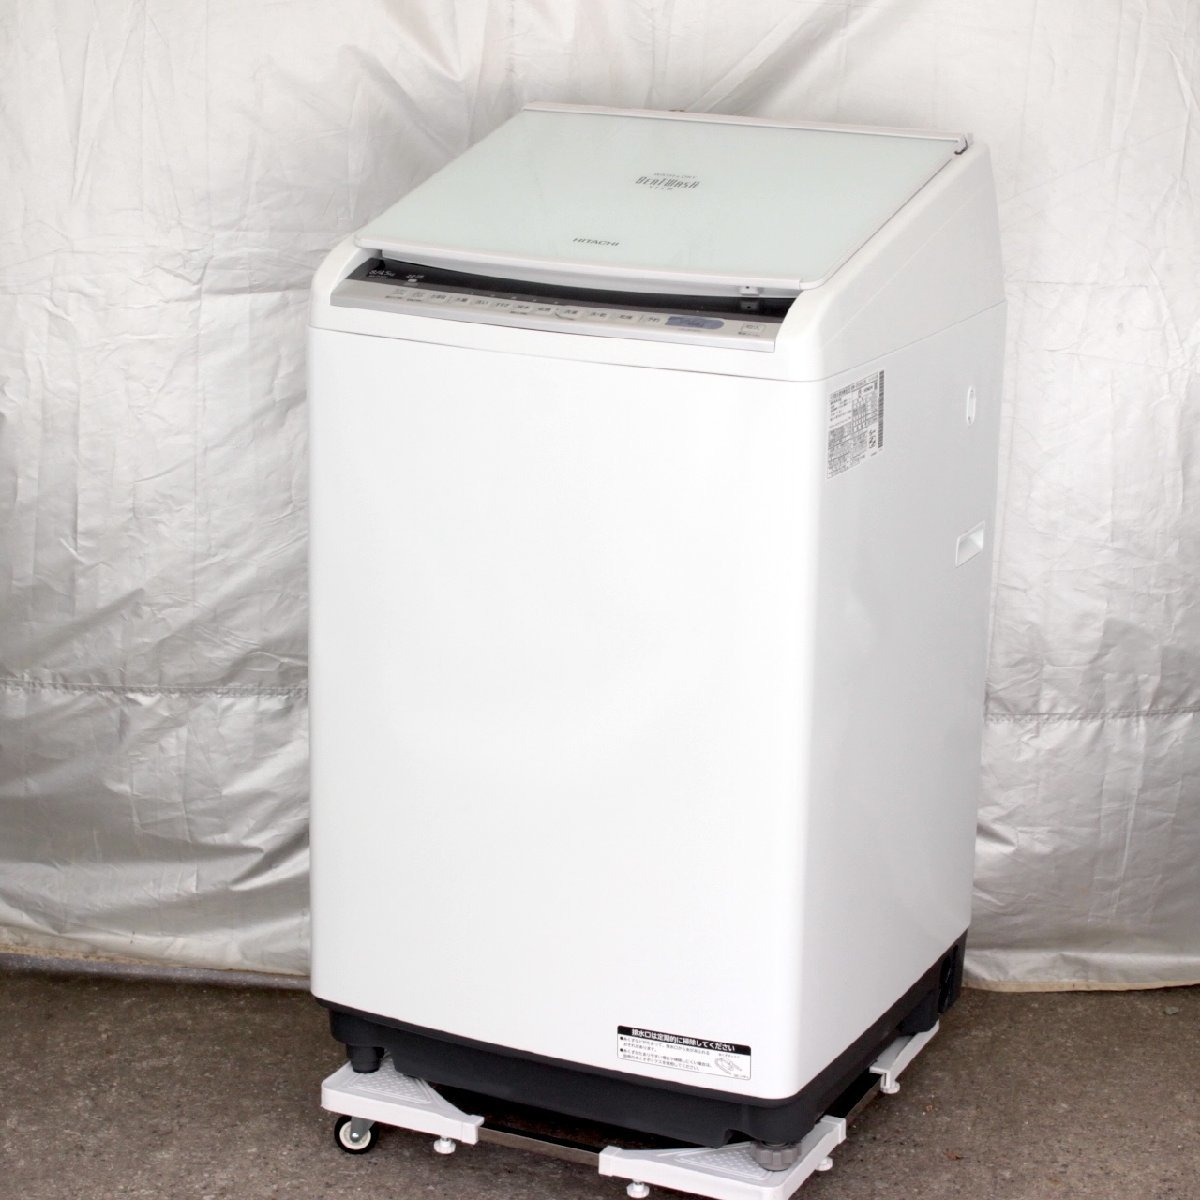 769) 日立 BW-DV80C 2019年製 洗濯8.0kg 乾燥4.5kg ビートウォッシュ ナイアガラビート洗浄 全自動縦型洗濯機 8kg ファミリーの画像1